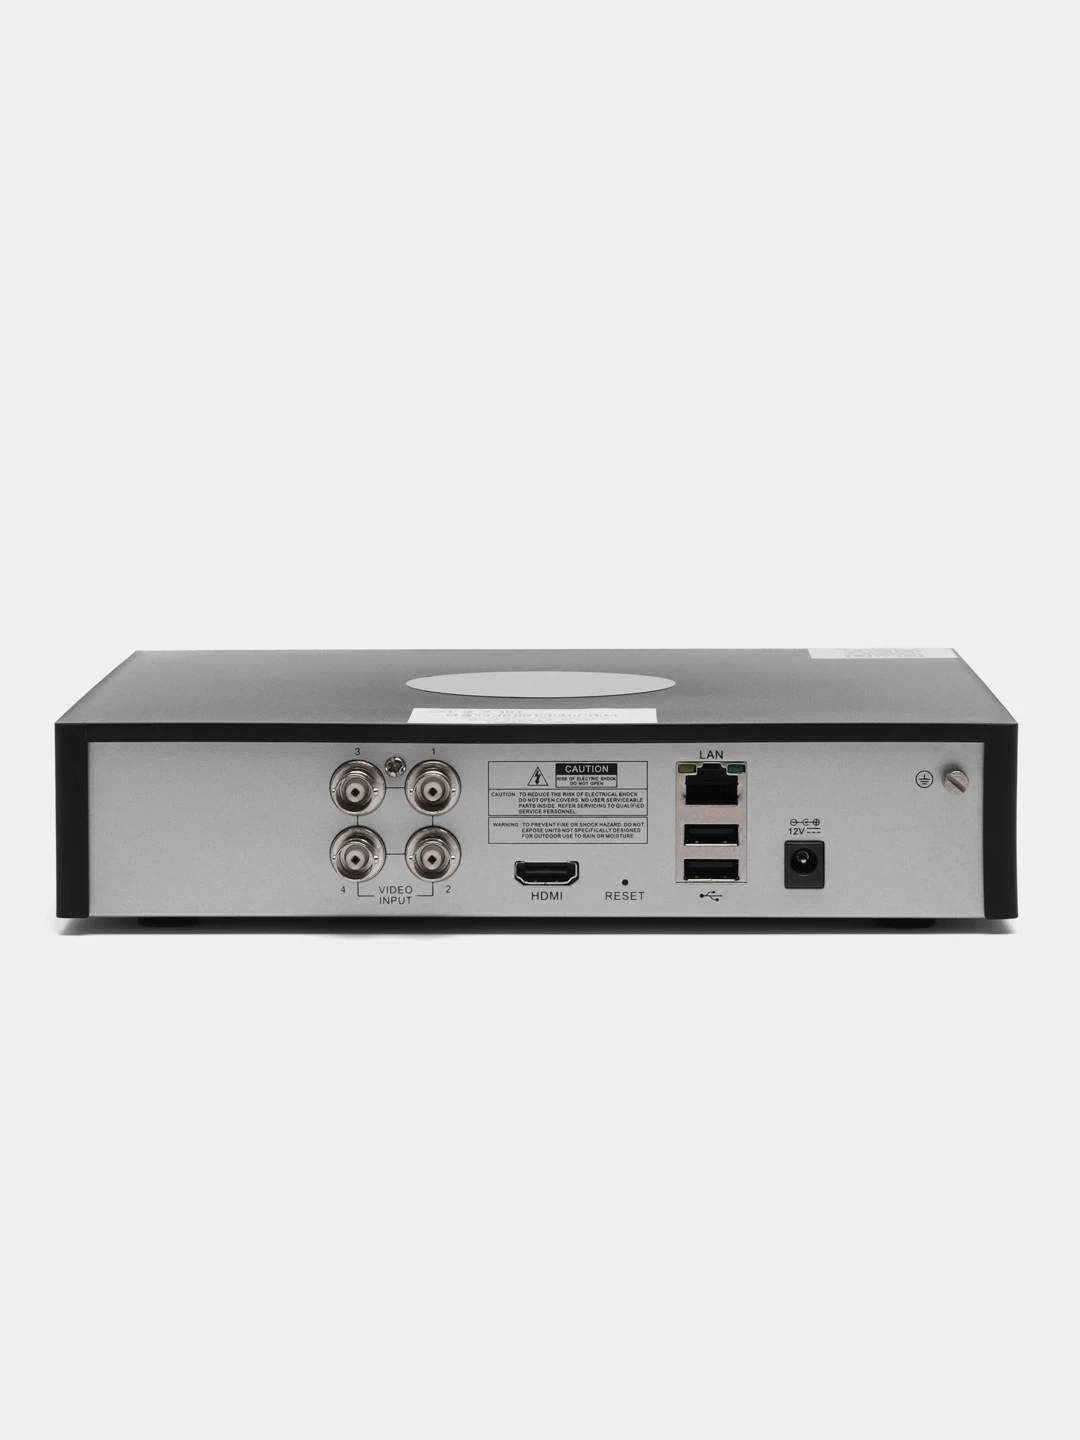 SVR-6110n v3.0 видеорегистратор гибридный. Видеорегистратор 8-канальный гибридный SVR-8115n v3.0 для чего он нужен. Hybrid регистратор